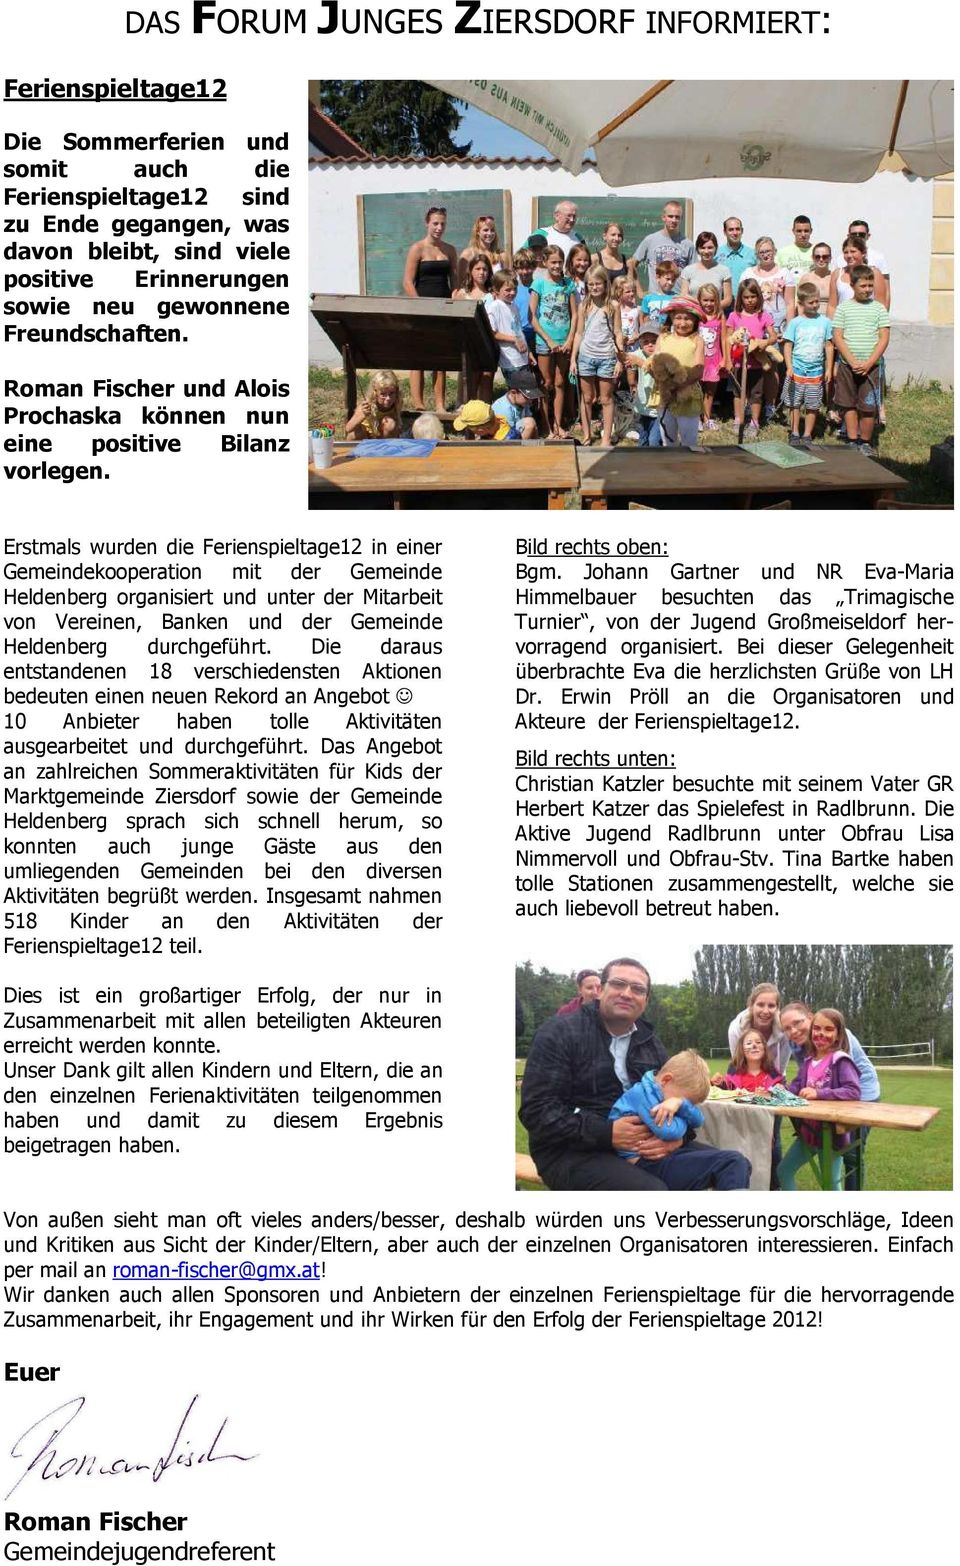 Erstmals wurden die Ferienspieltage12 in einer Gemeindekooperation mit der Gemeinde Heldenberg organisiert und unter der Mitarbeit von Vereinen, Banken und der Gemeinde Heldenberg durchgeführt.